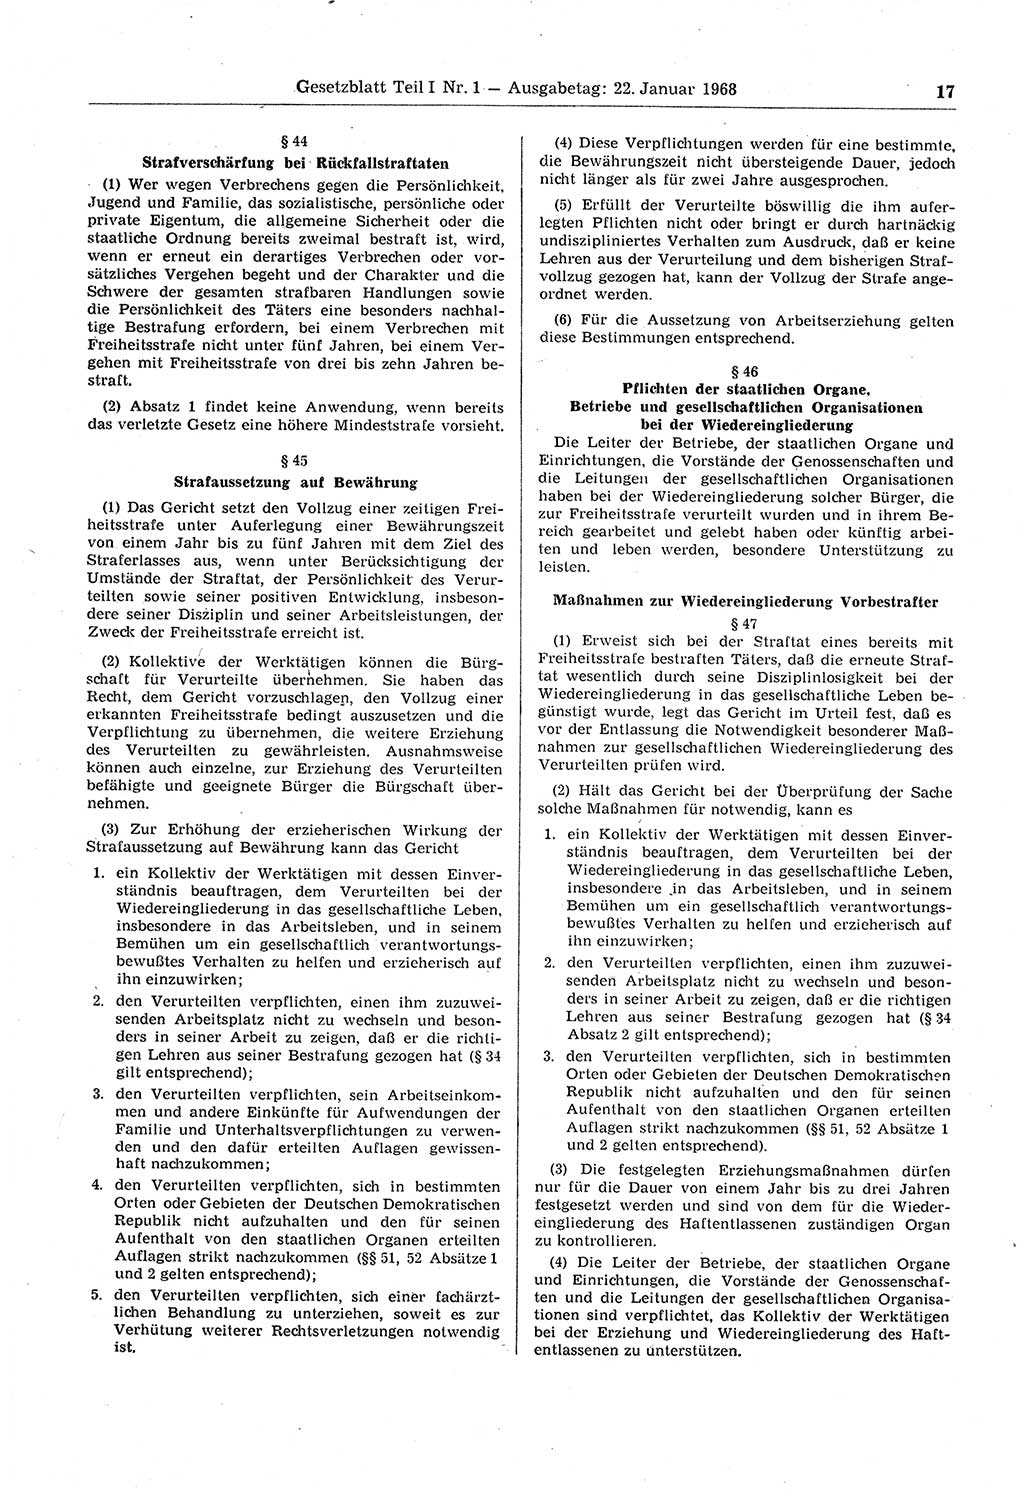 Gesetzblatt (GBl.) der Deutschen Demokratischen Republik (DDR) Teil Ⅰ 1968, Seite 17 (GBl. DDR Ⅰ 1968, S. 17)